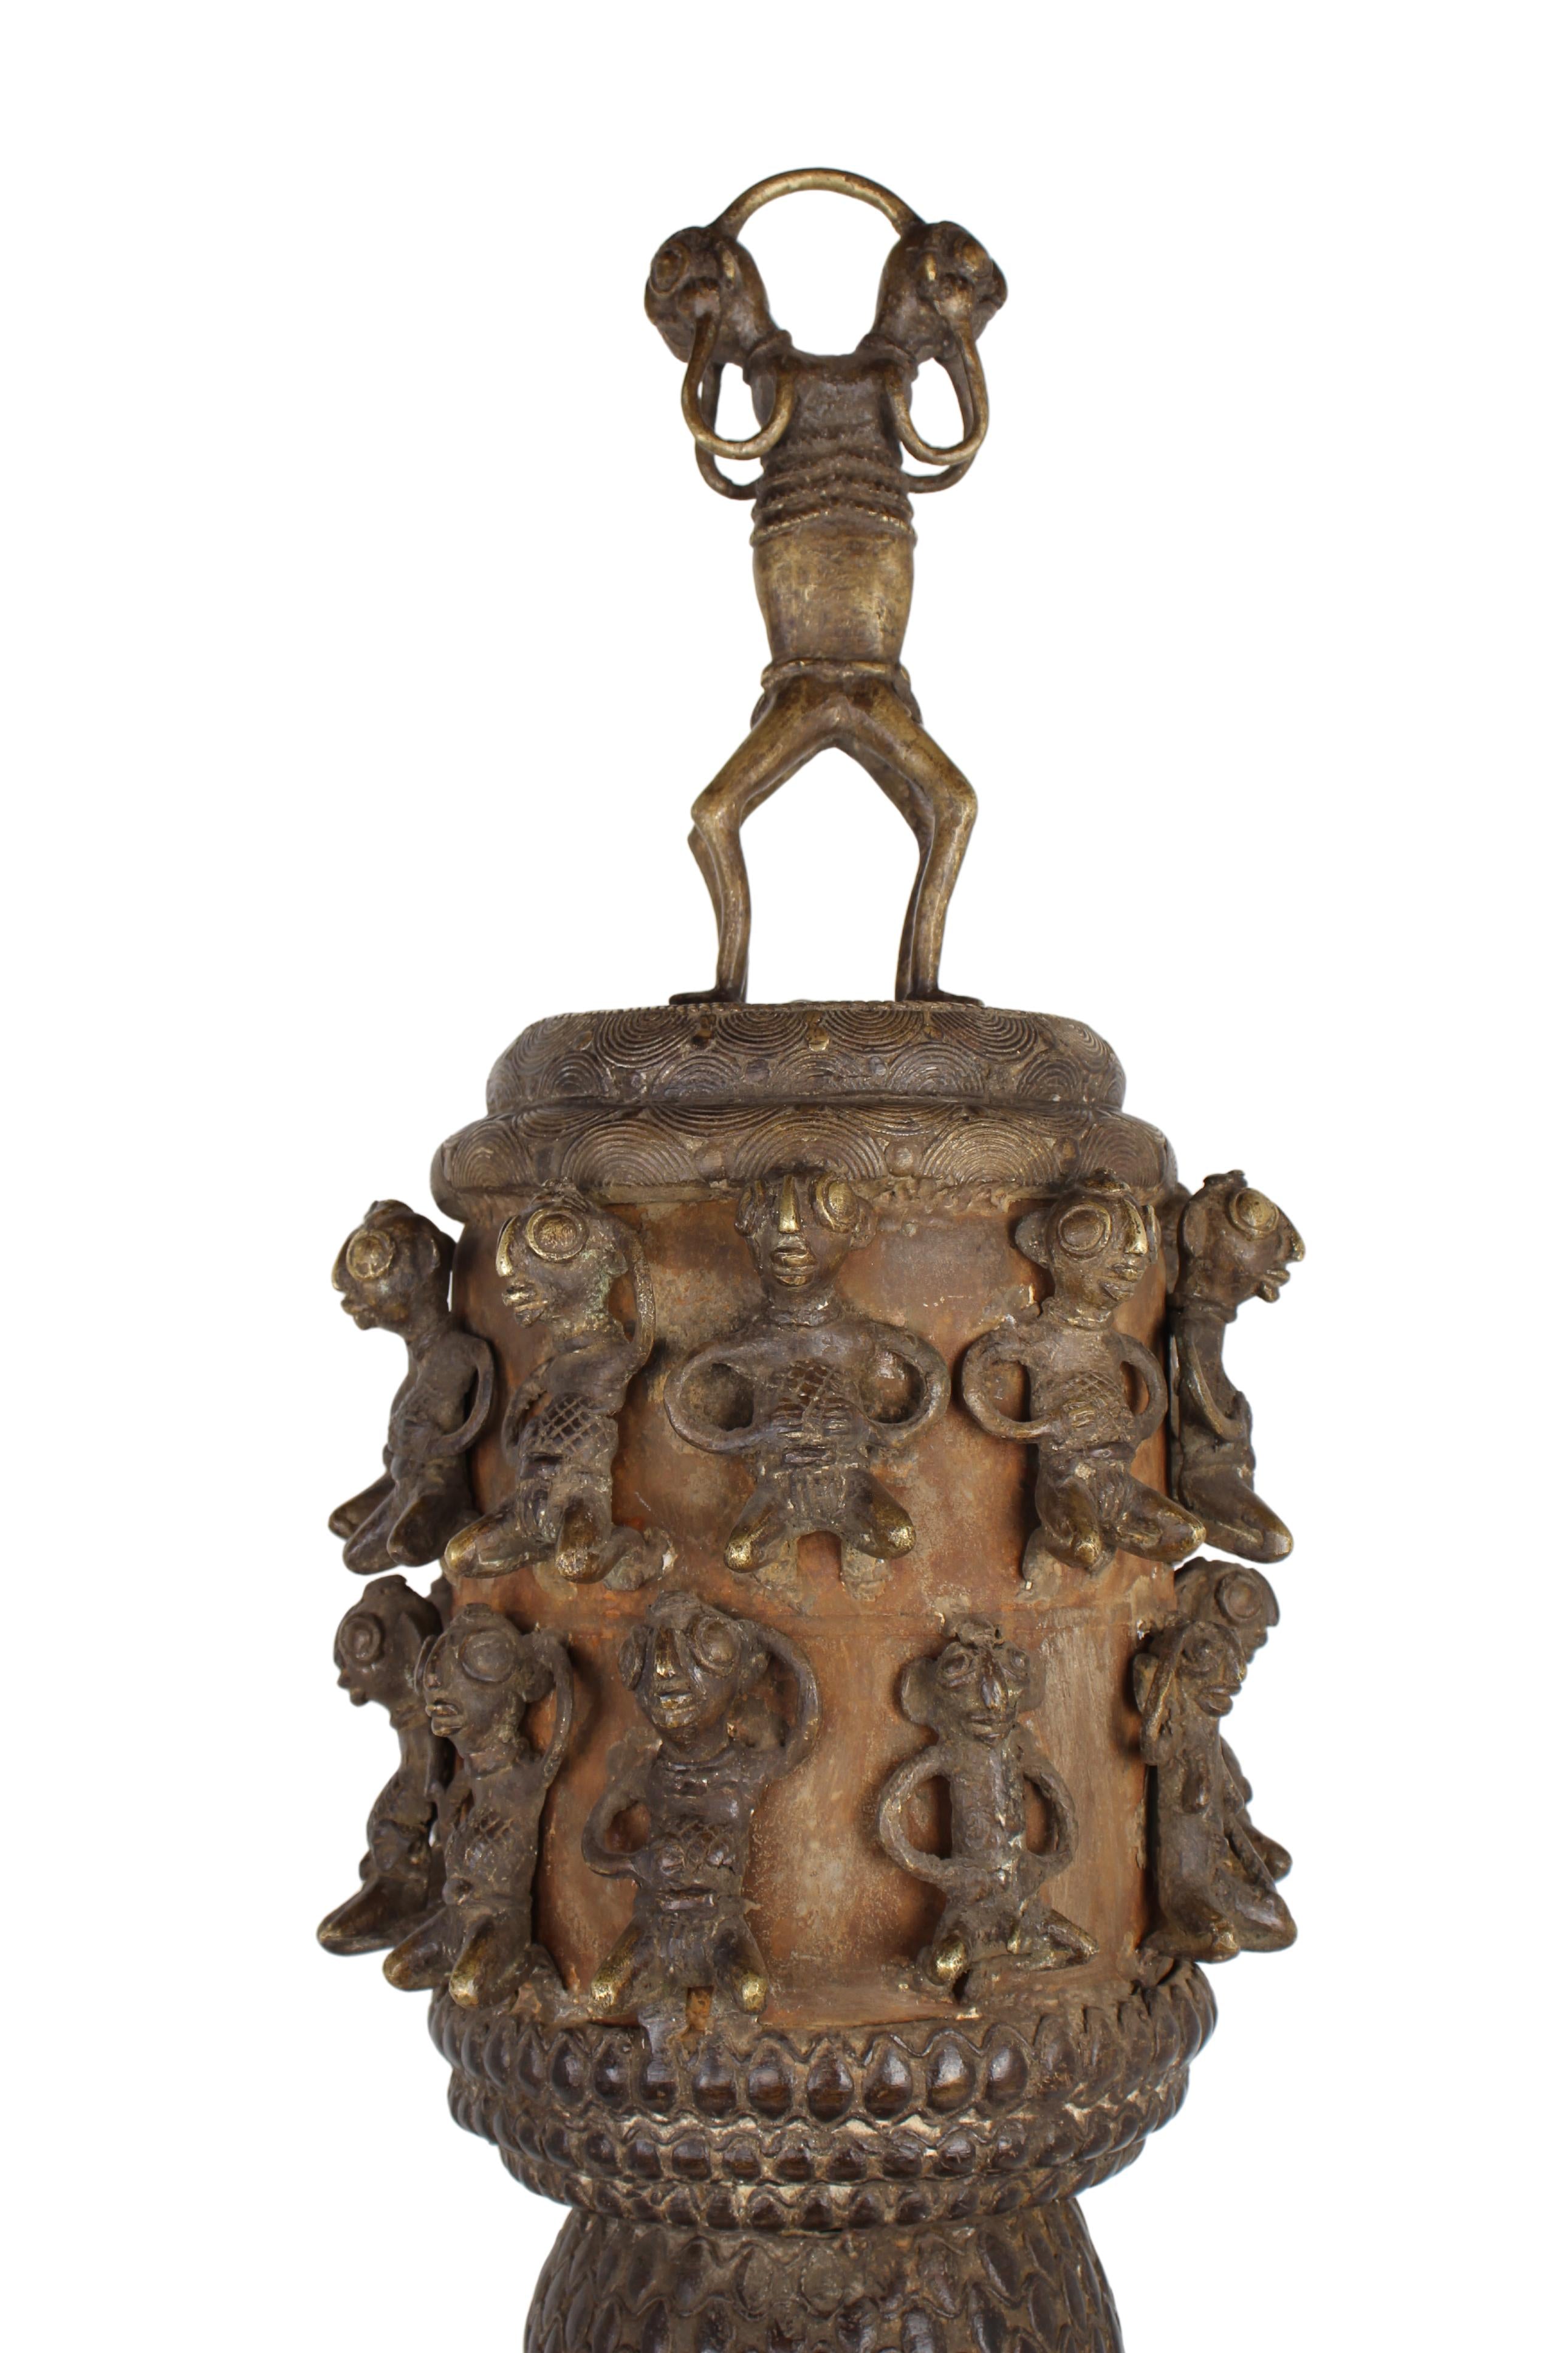 Sao/Kotoko Tribe Bronze Pot ~57.1" Tall (New 2024) - West African Artifacts